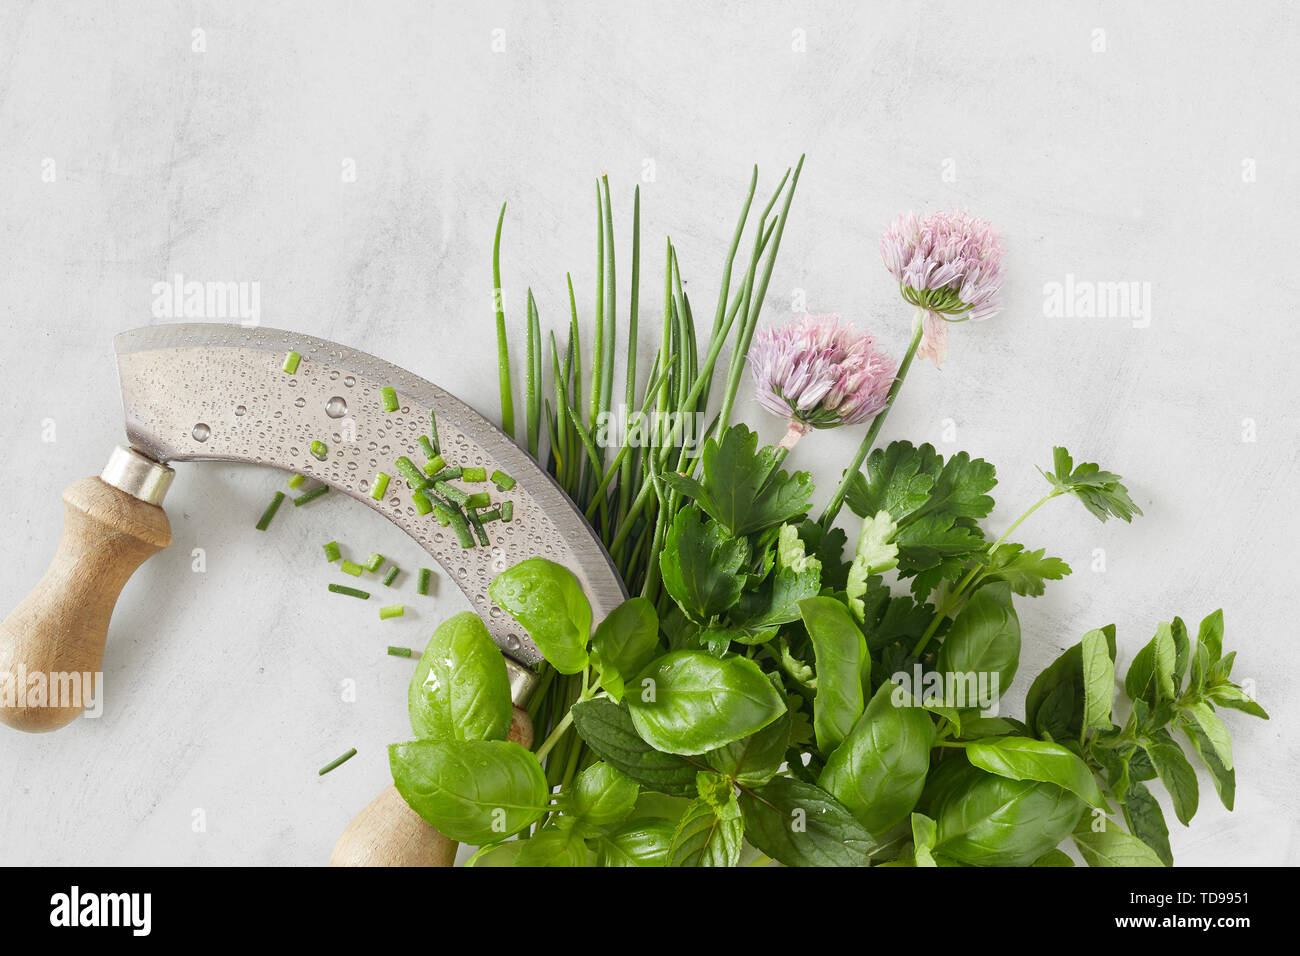 Mezzaluna coltello con un bouquet garni misto di erbe aromatiche e fiori di erba cipollina su un chiazzato sfondo grigio chiaro in una vista ravvicinata Foto Stock